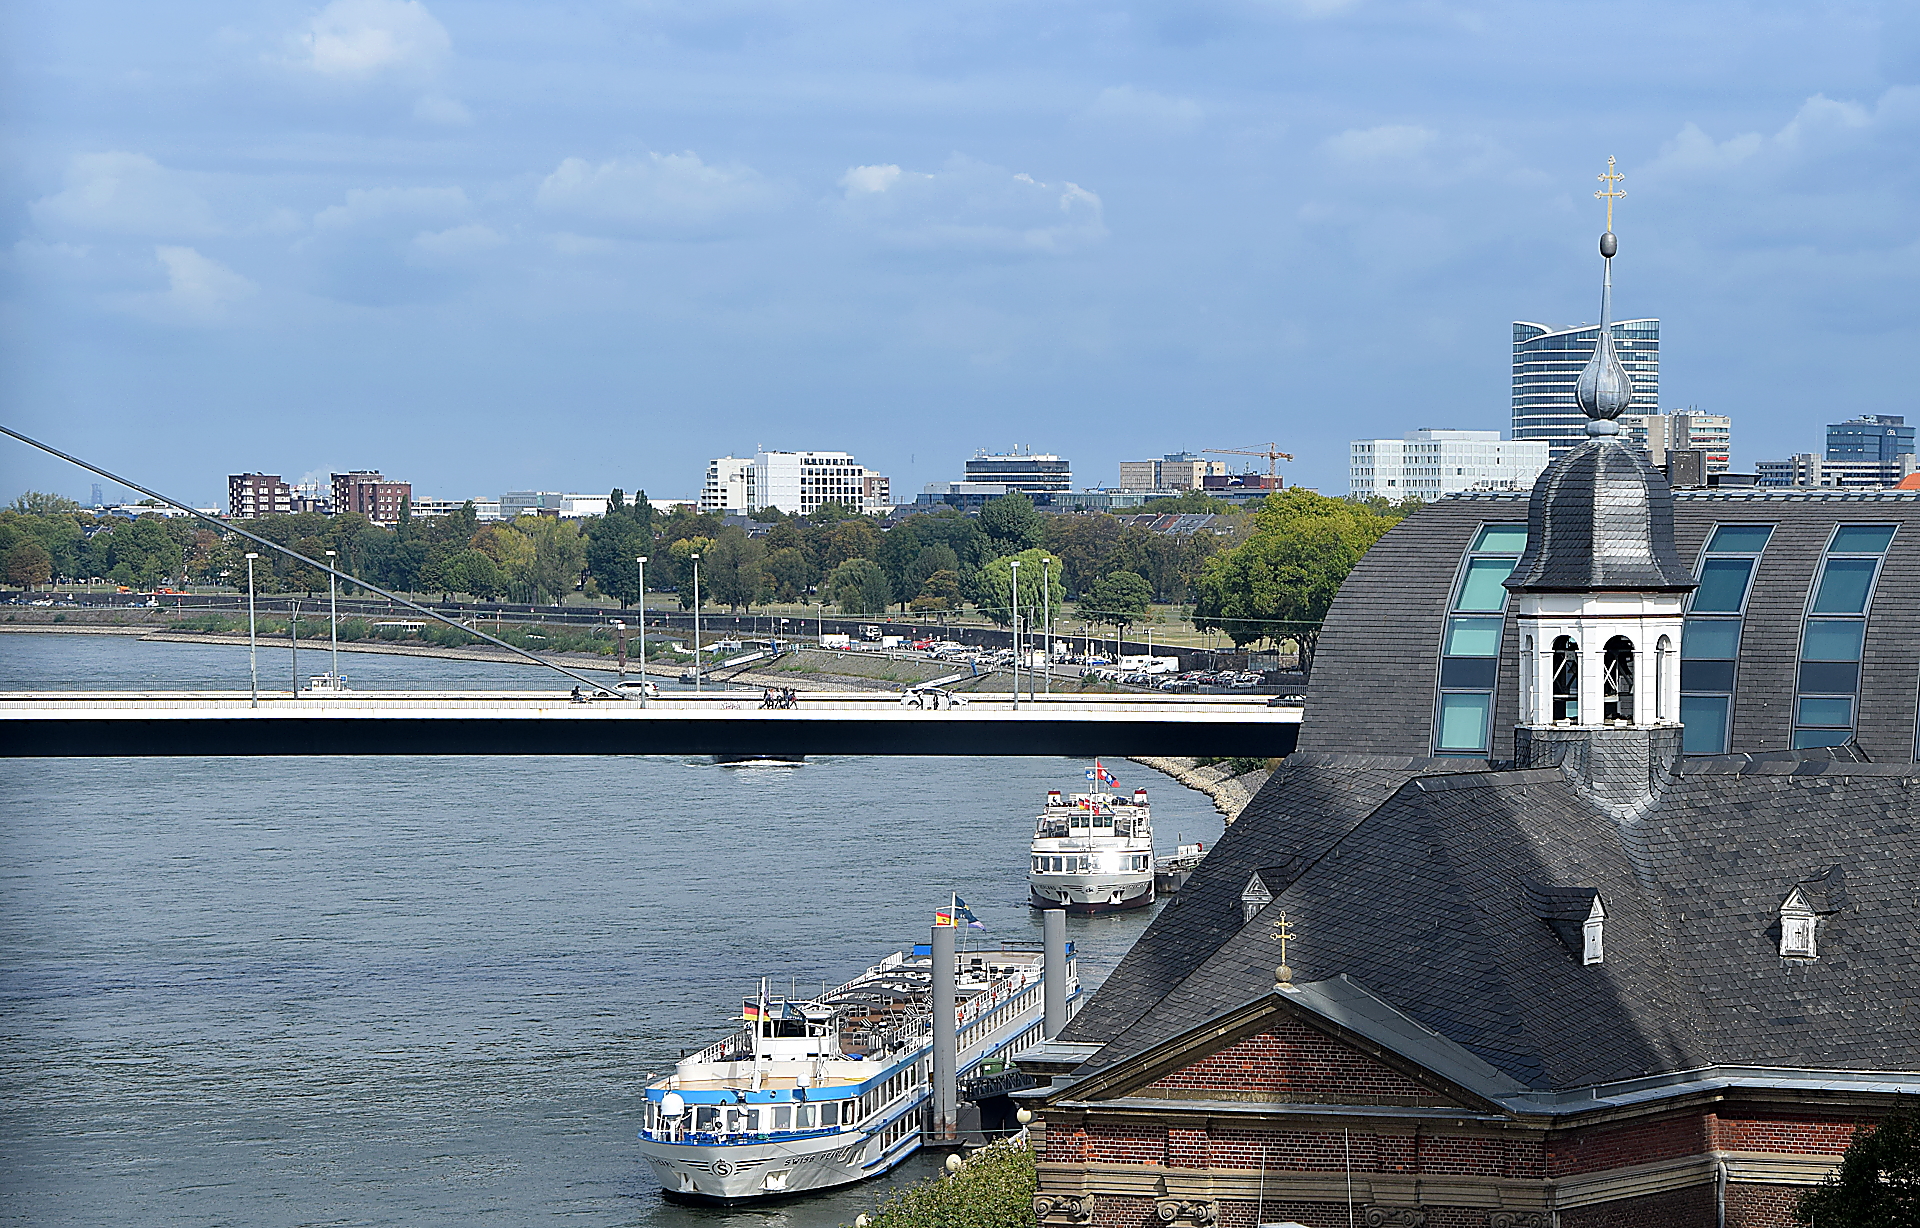 Ausflugsdampfer auf dem Rhein